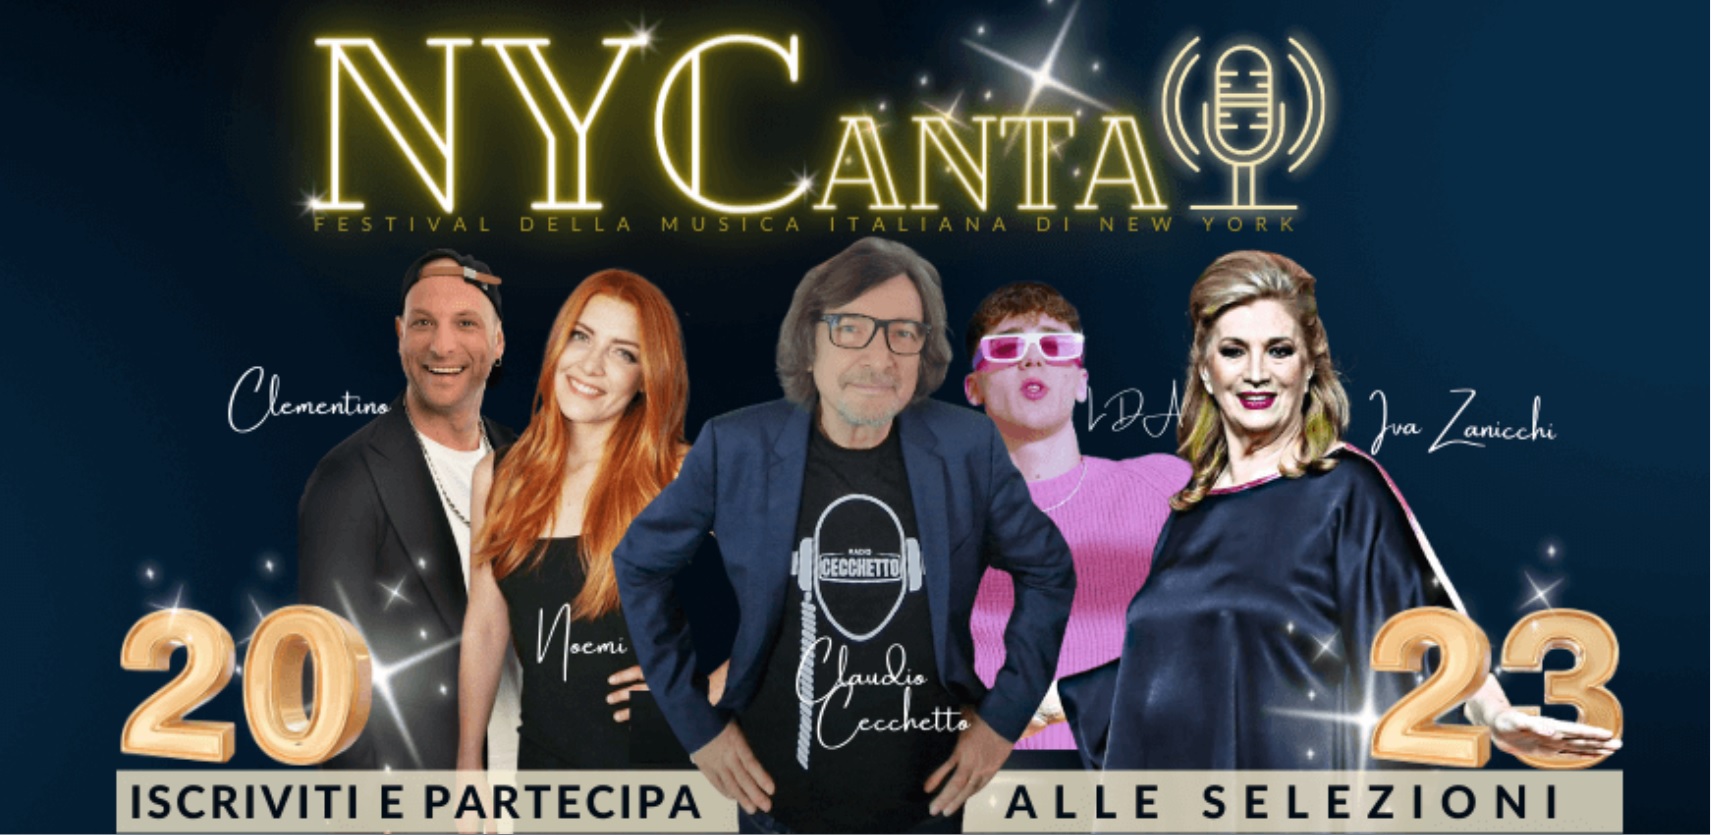 NYCanta, il Festival della Musica italiana di New York - Edizione 2023 -  Comunità Radiotelevisiva Italofona